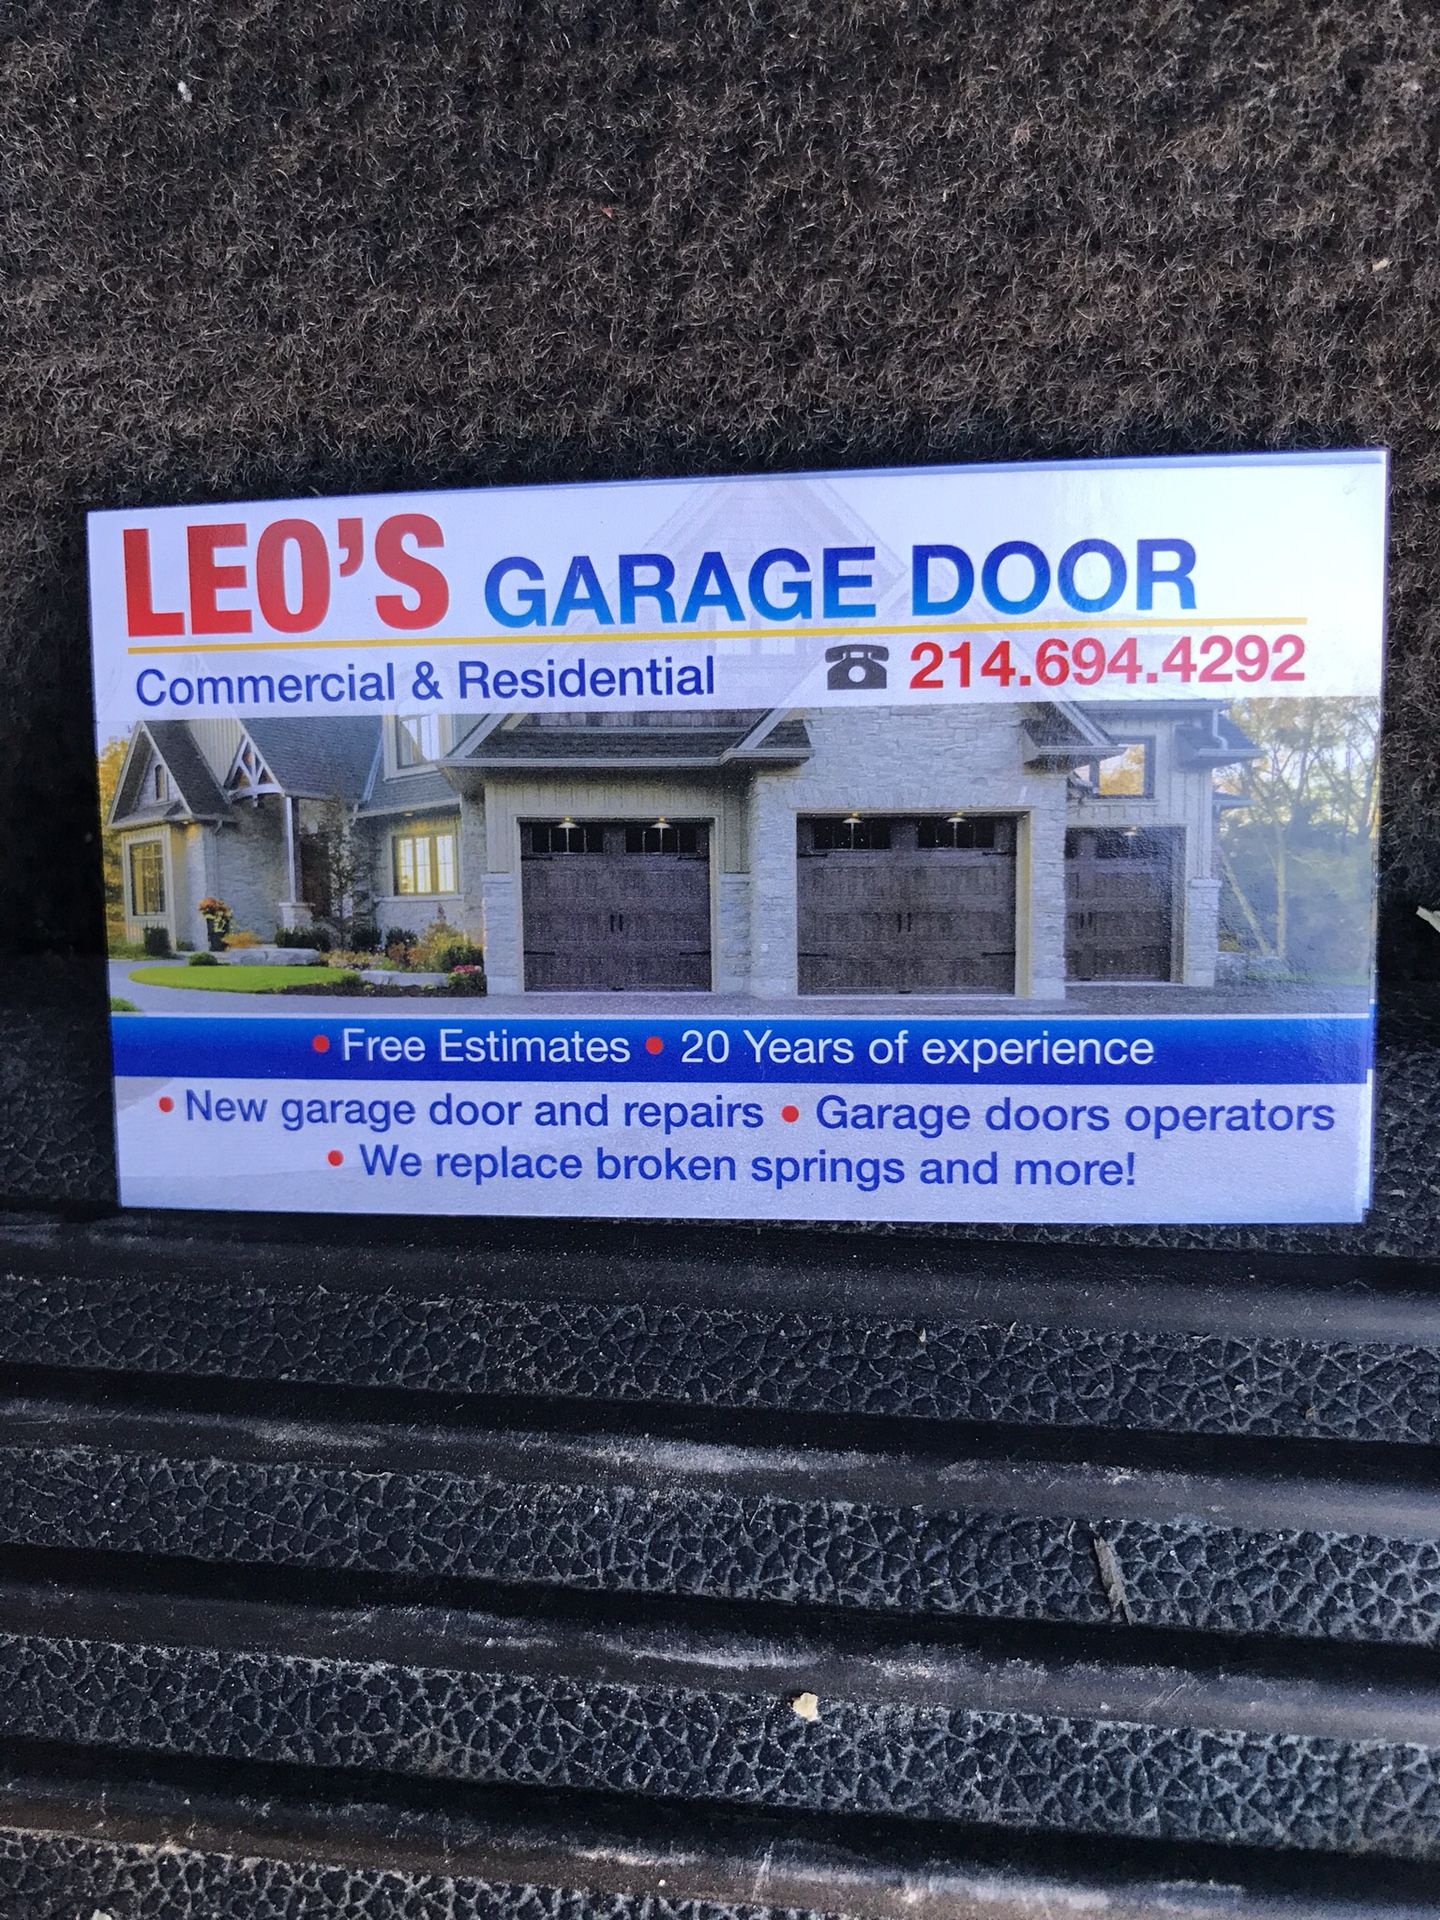 Leo’s garage doors